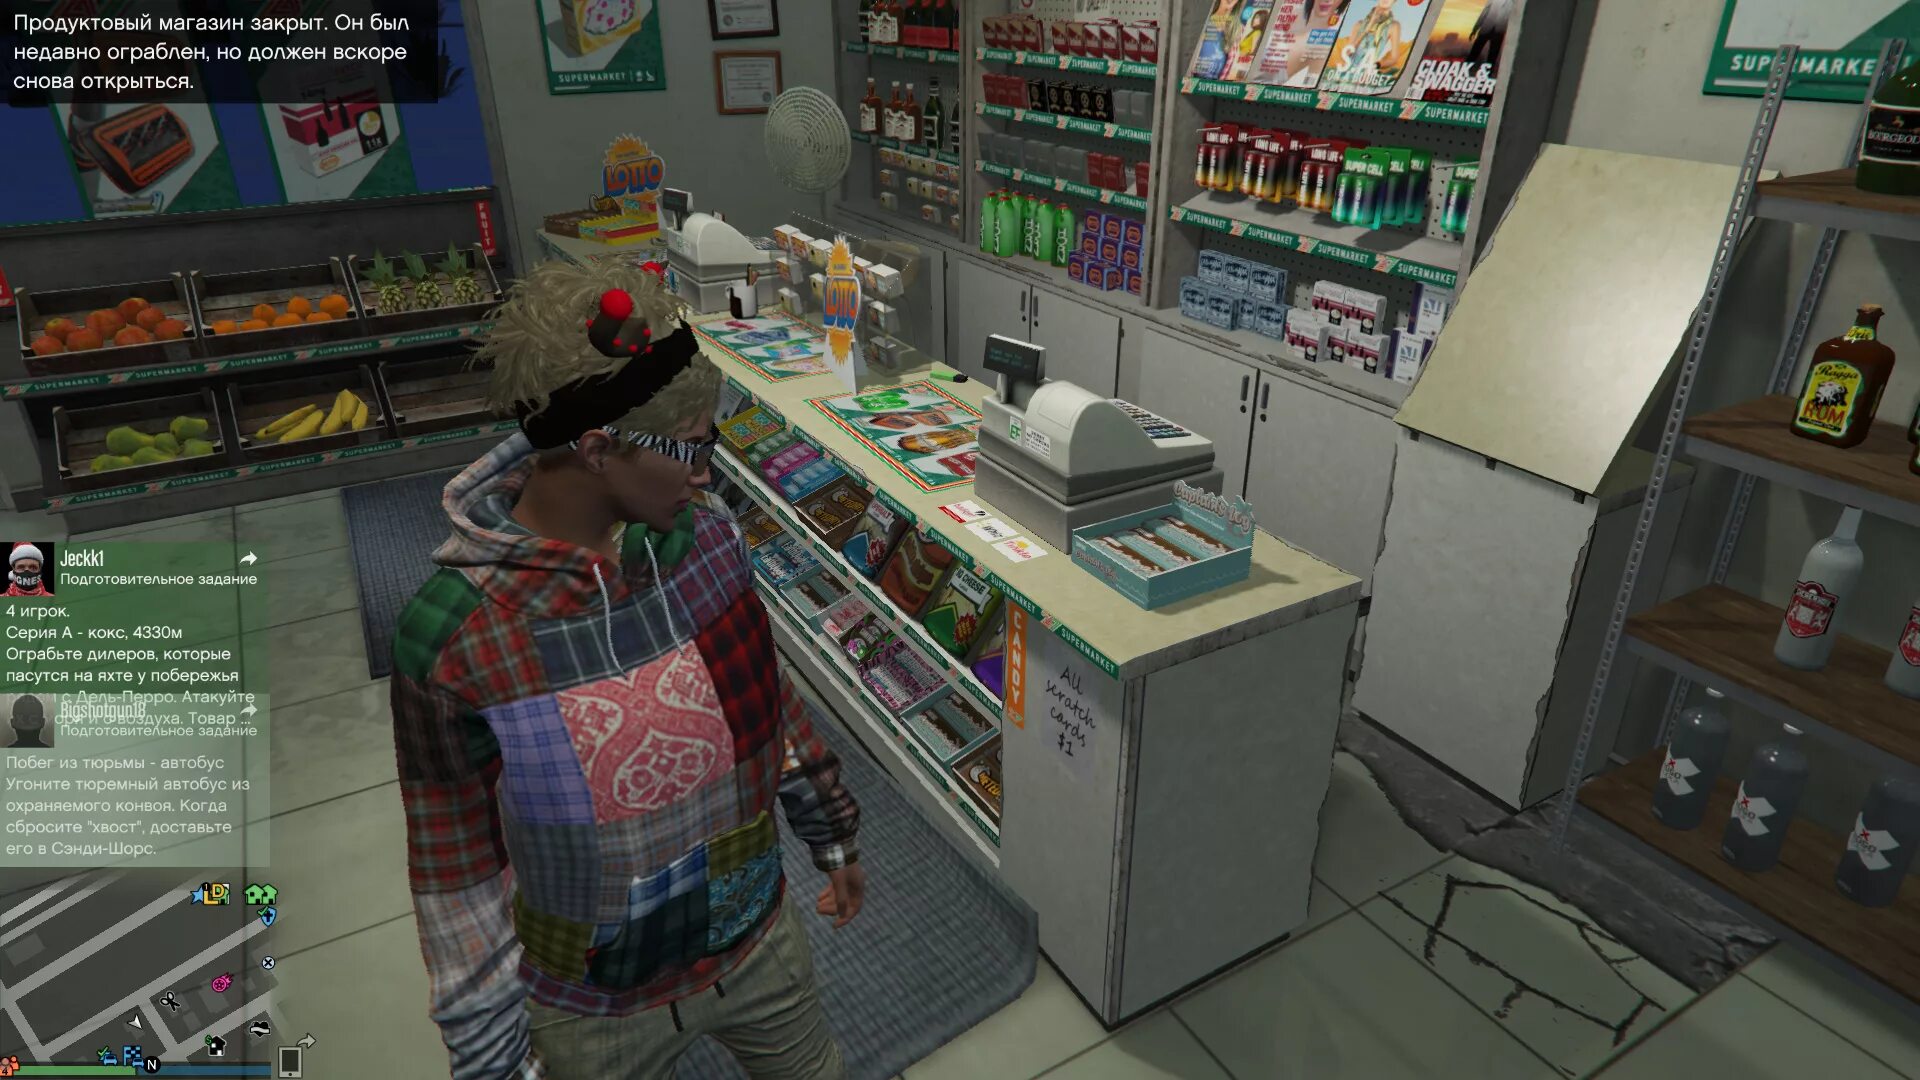 GTA 5 магазины для ограбления. Ограбления люберельный магазин в ГТА 5. Ограбление магазина. Игра про ограбление магазина. Магазины которые можно ограбить